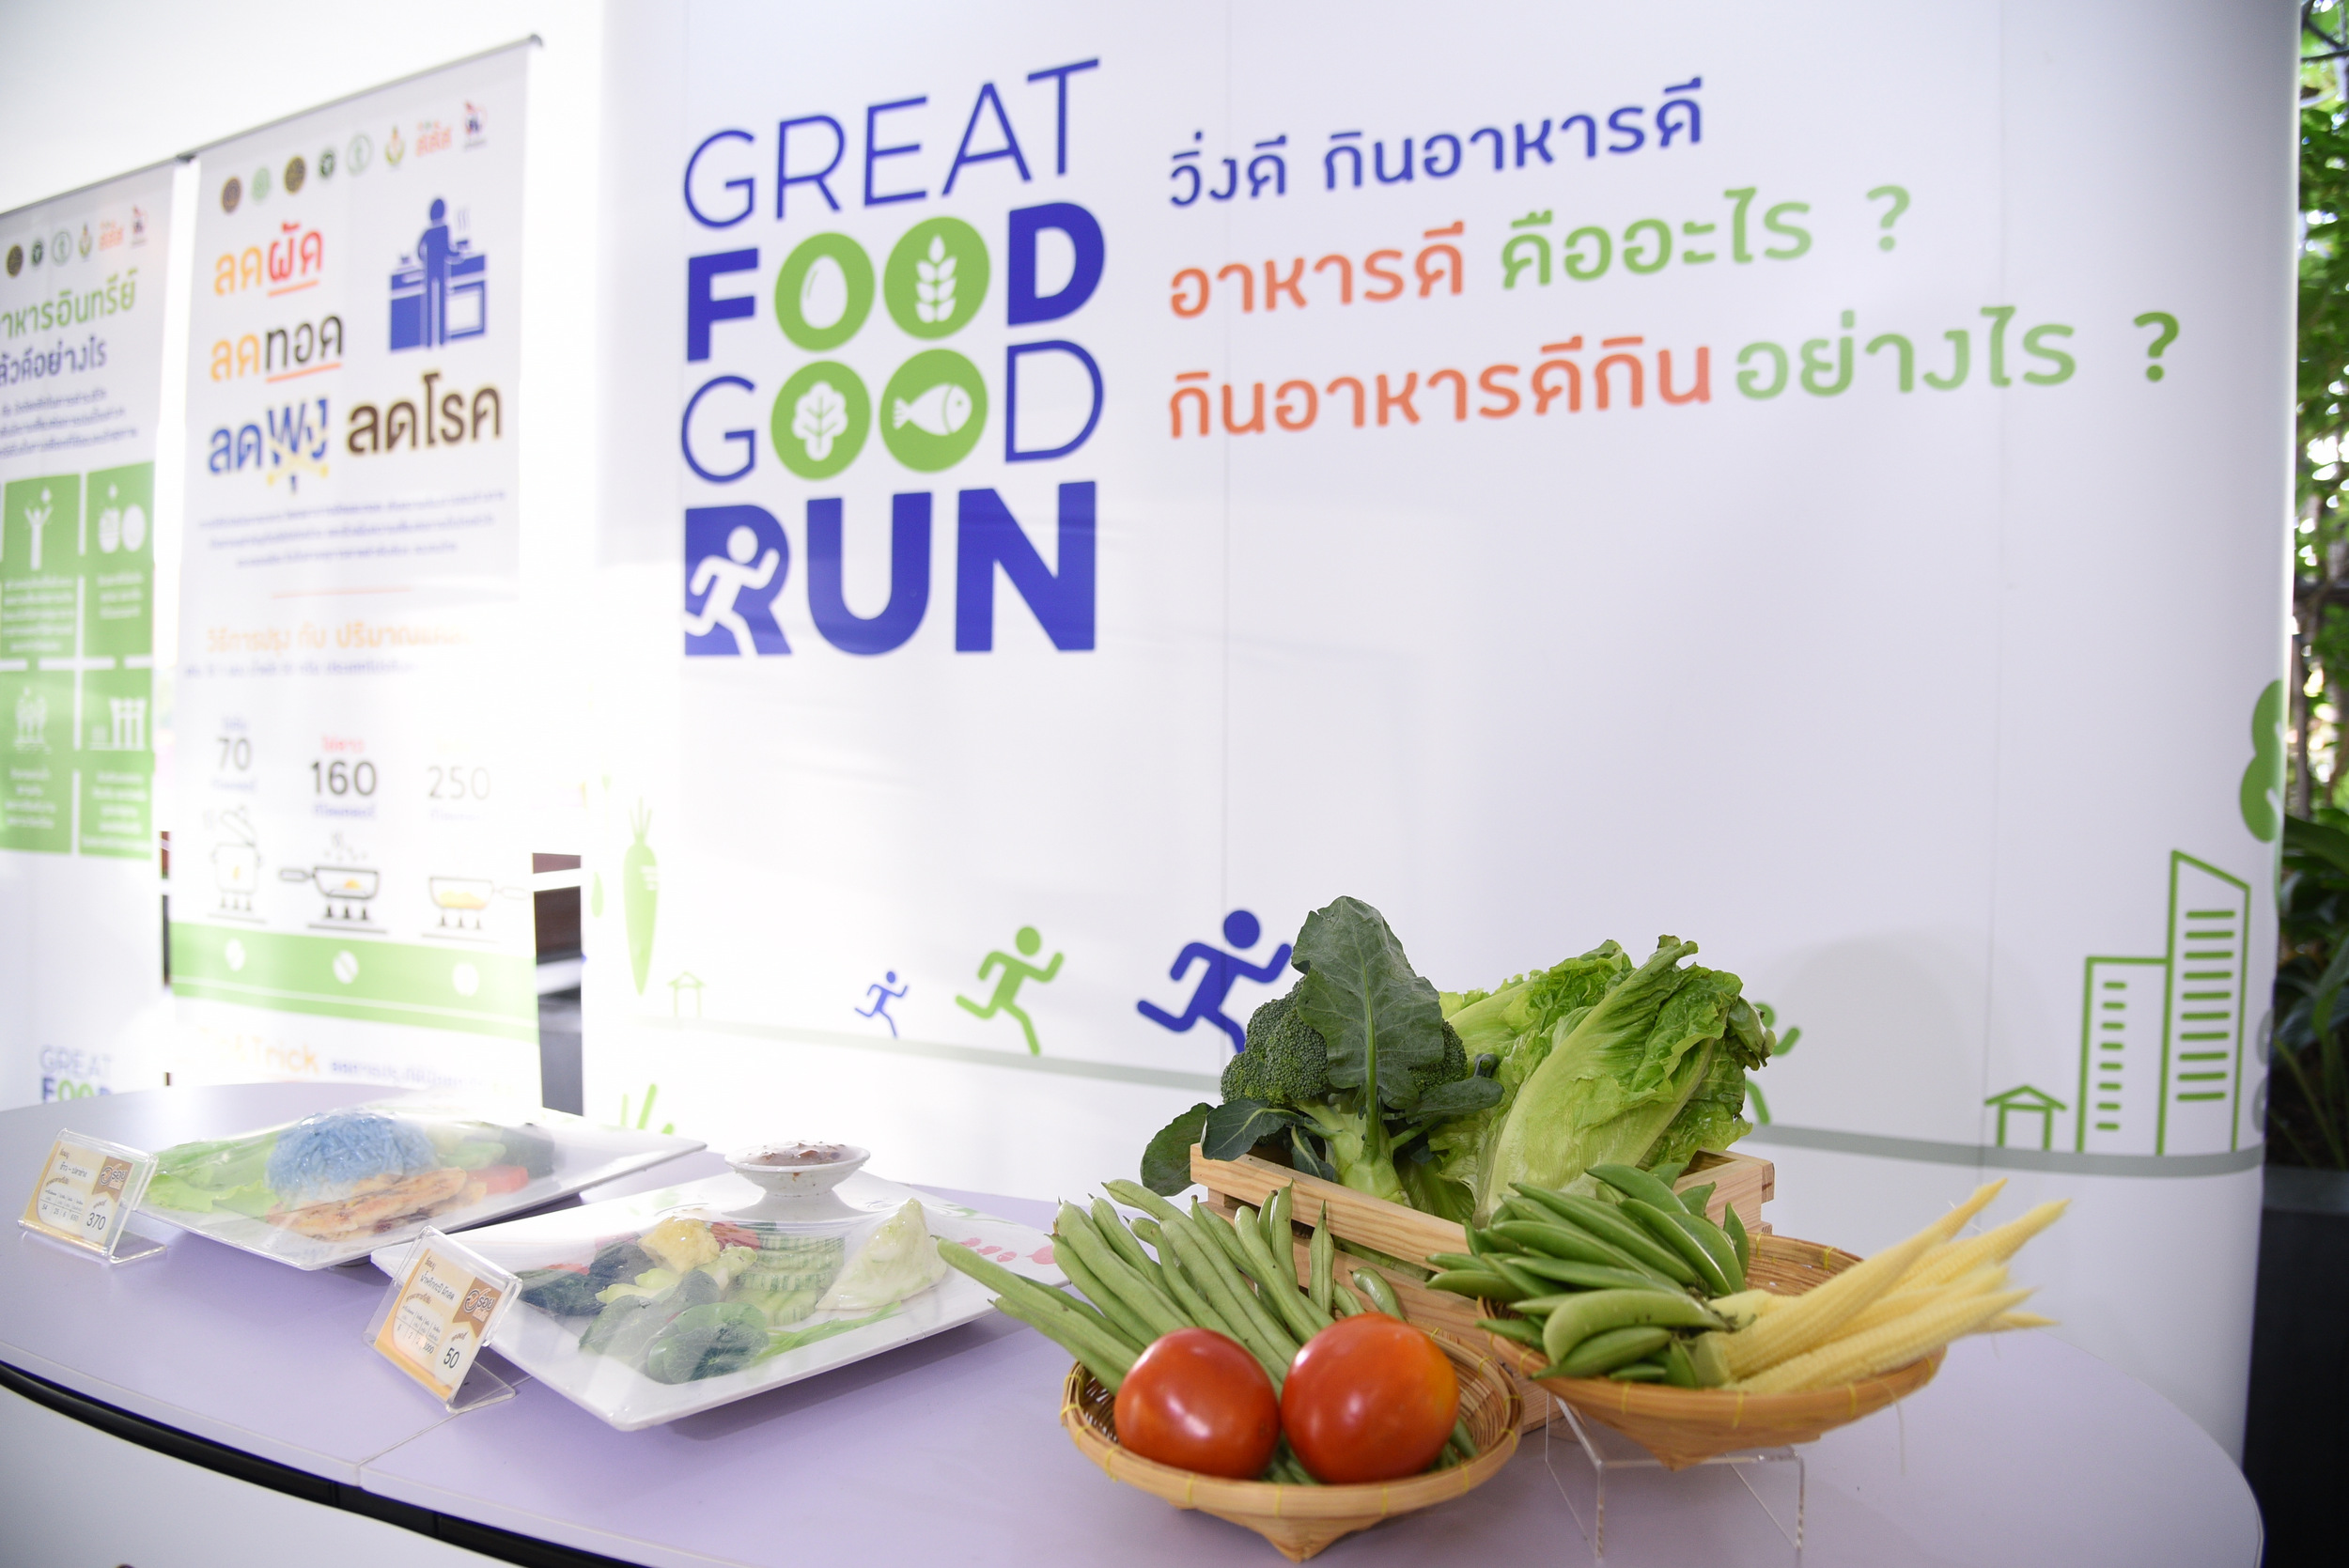 เดินวิ่งเพื่อสุขภาพ-บริโภคอาหารปลอดภัย thaihealth